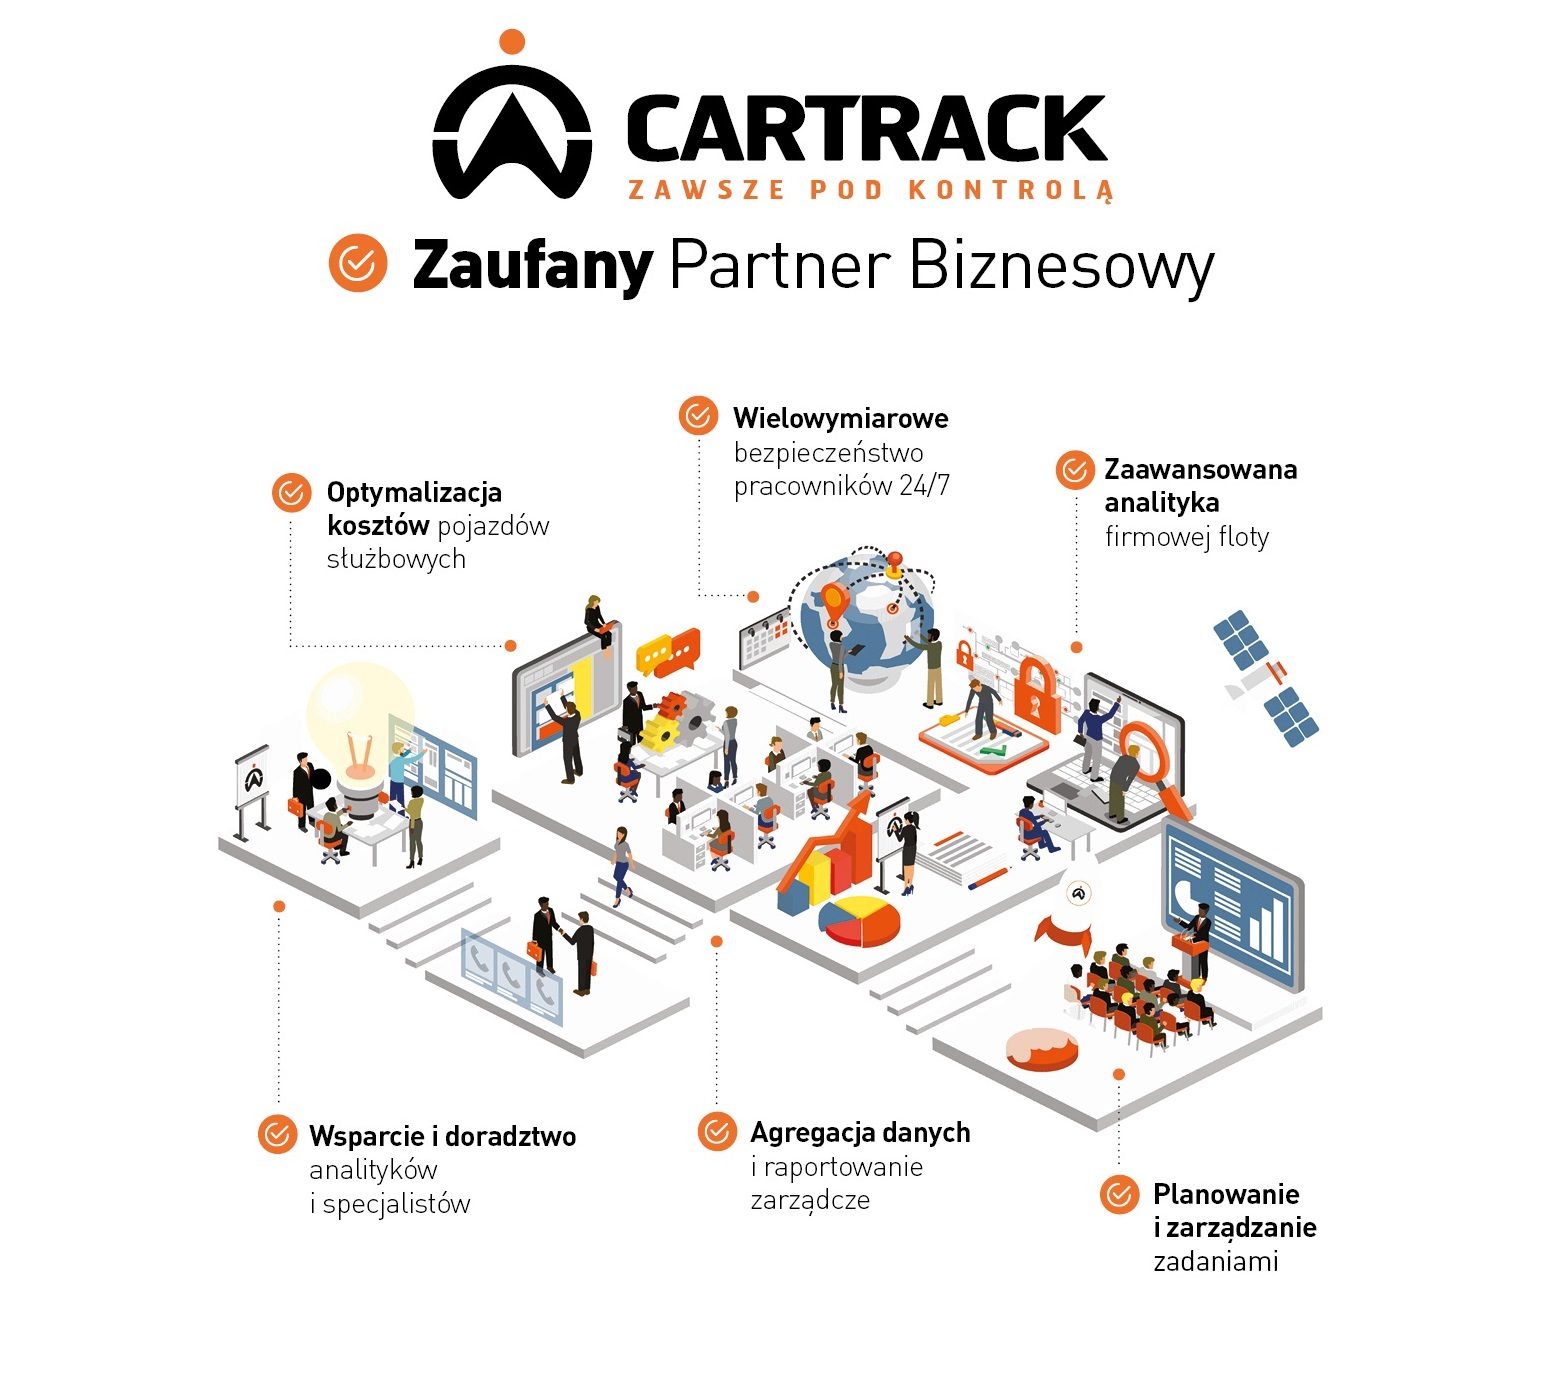 Cartrack reklama 210x297vol2 - Kamil Jakacki - możliwości telemetrii wykraczają poza podawanie samej lokalizacji.